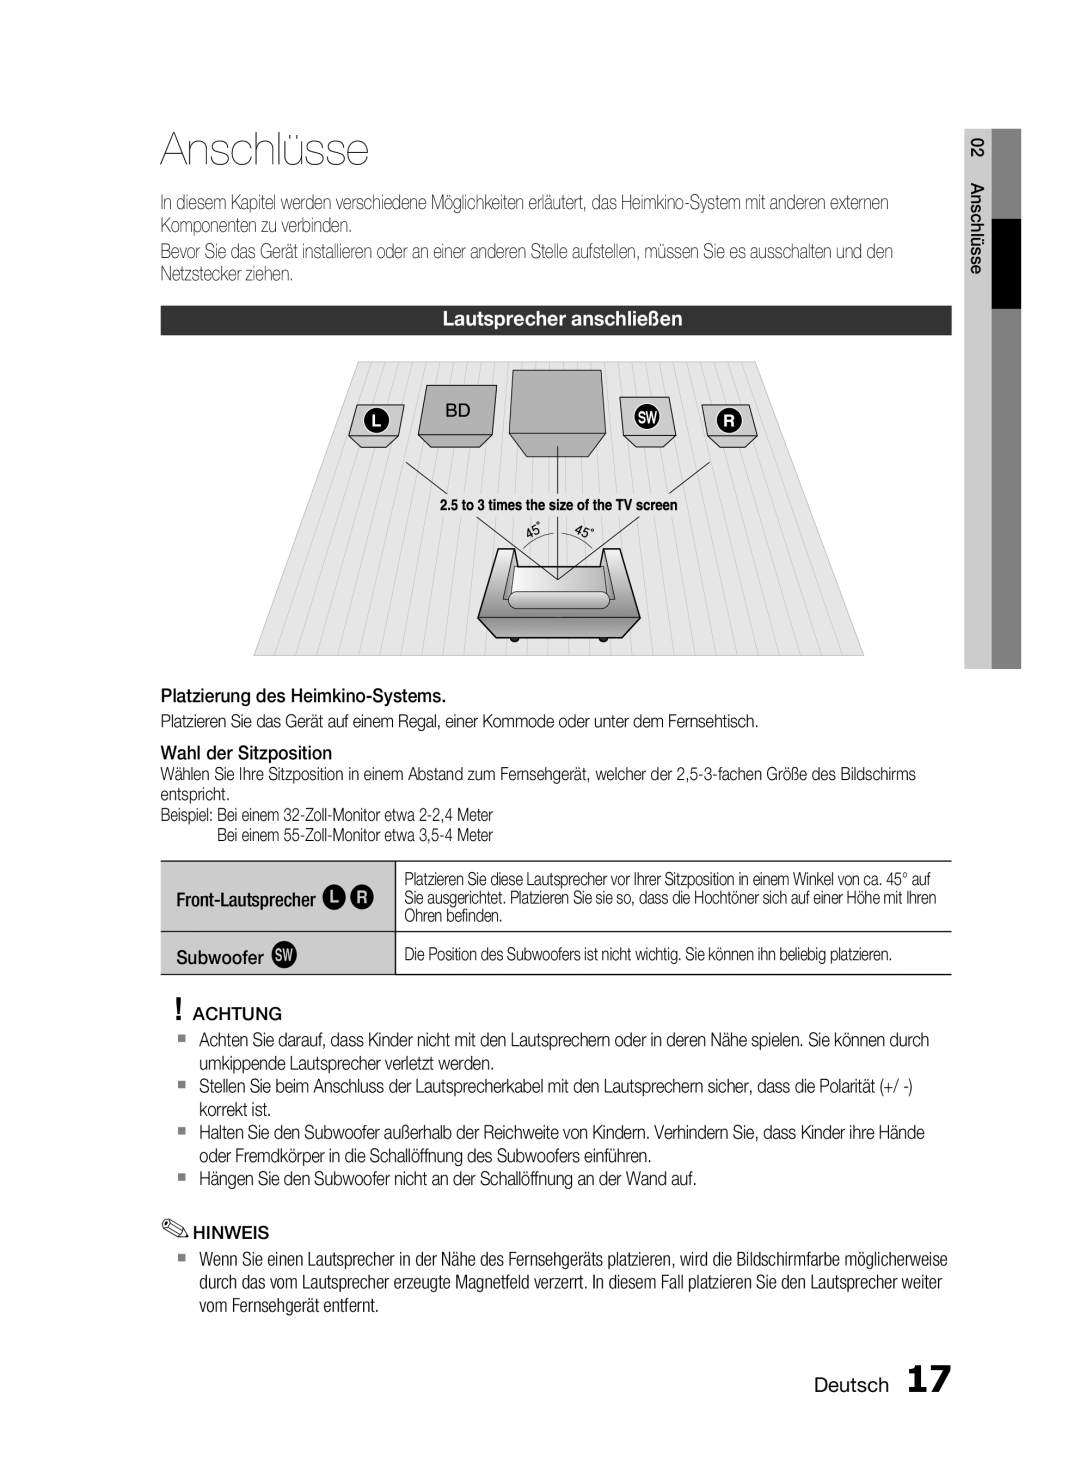 Samsung HT-C6200/XEF manual Anschlüsse, Lautsprecher anschließen 